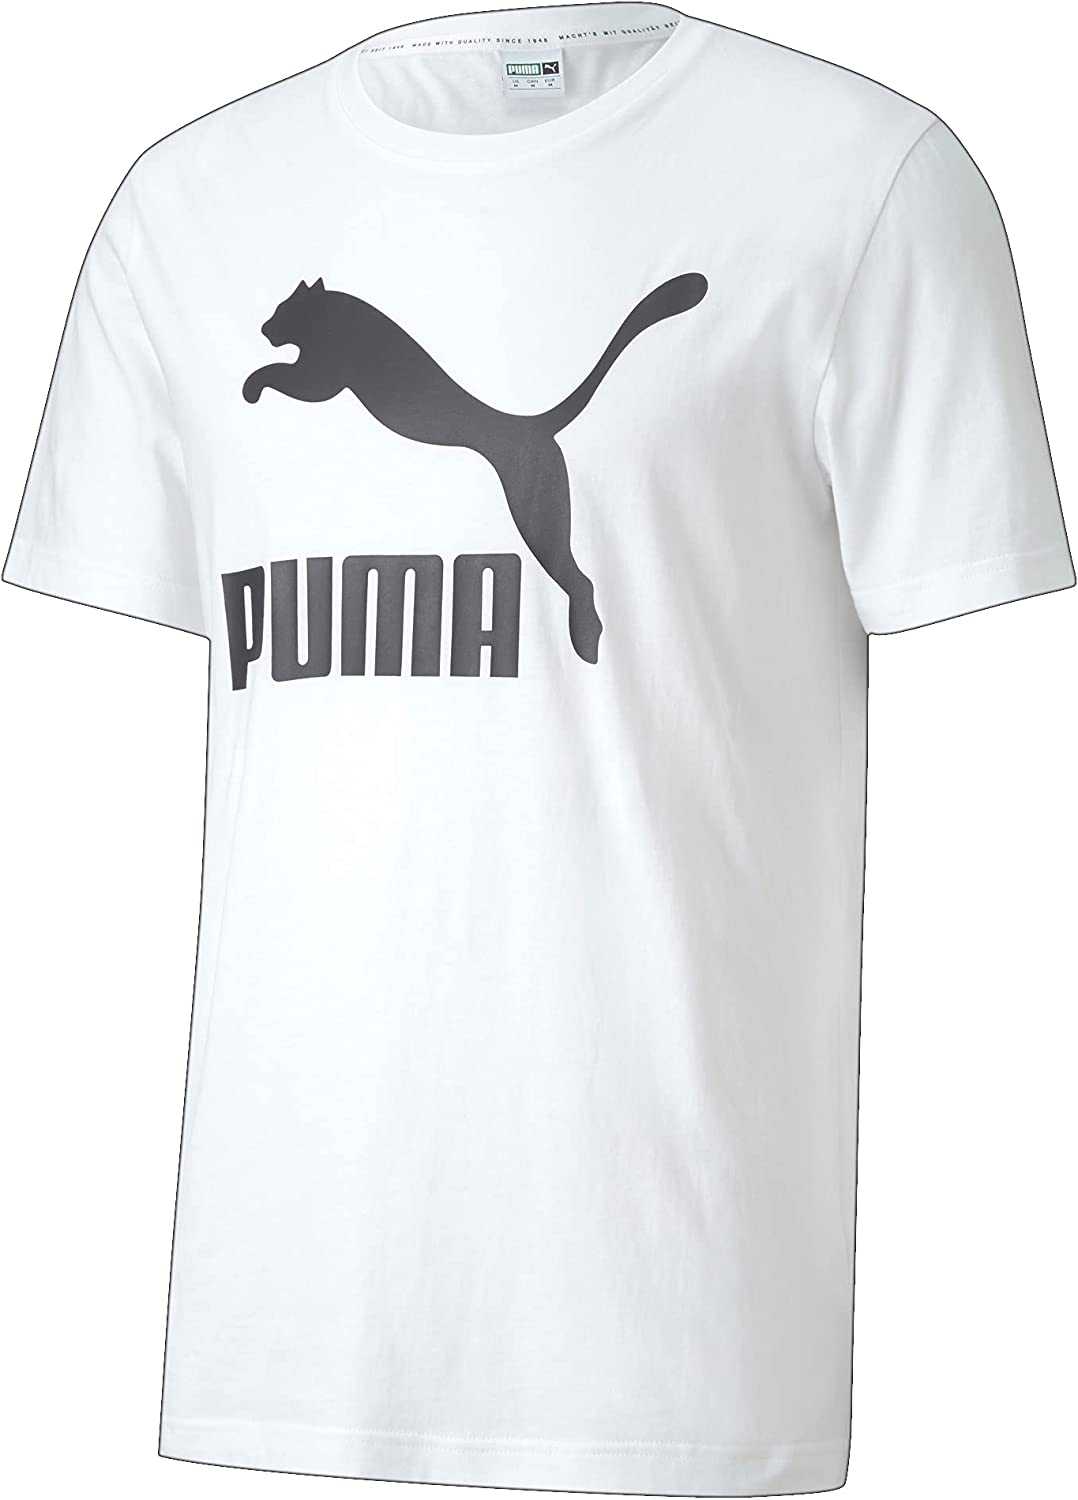 Puma (пума) | история puma